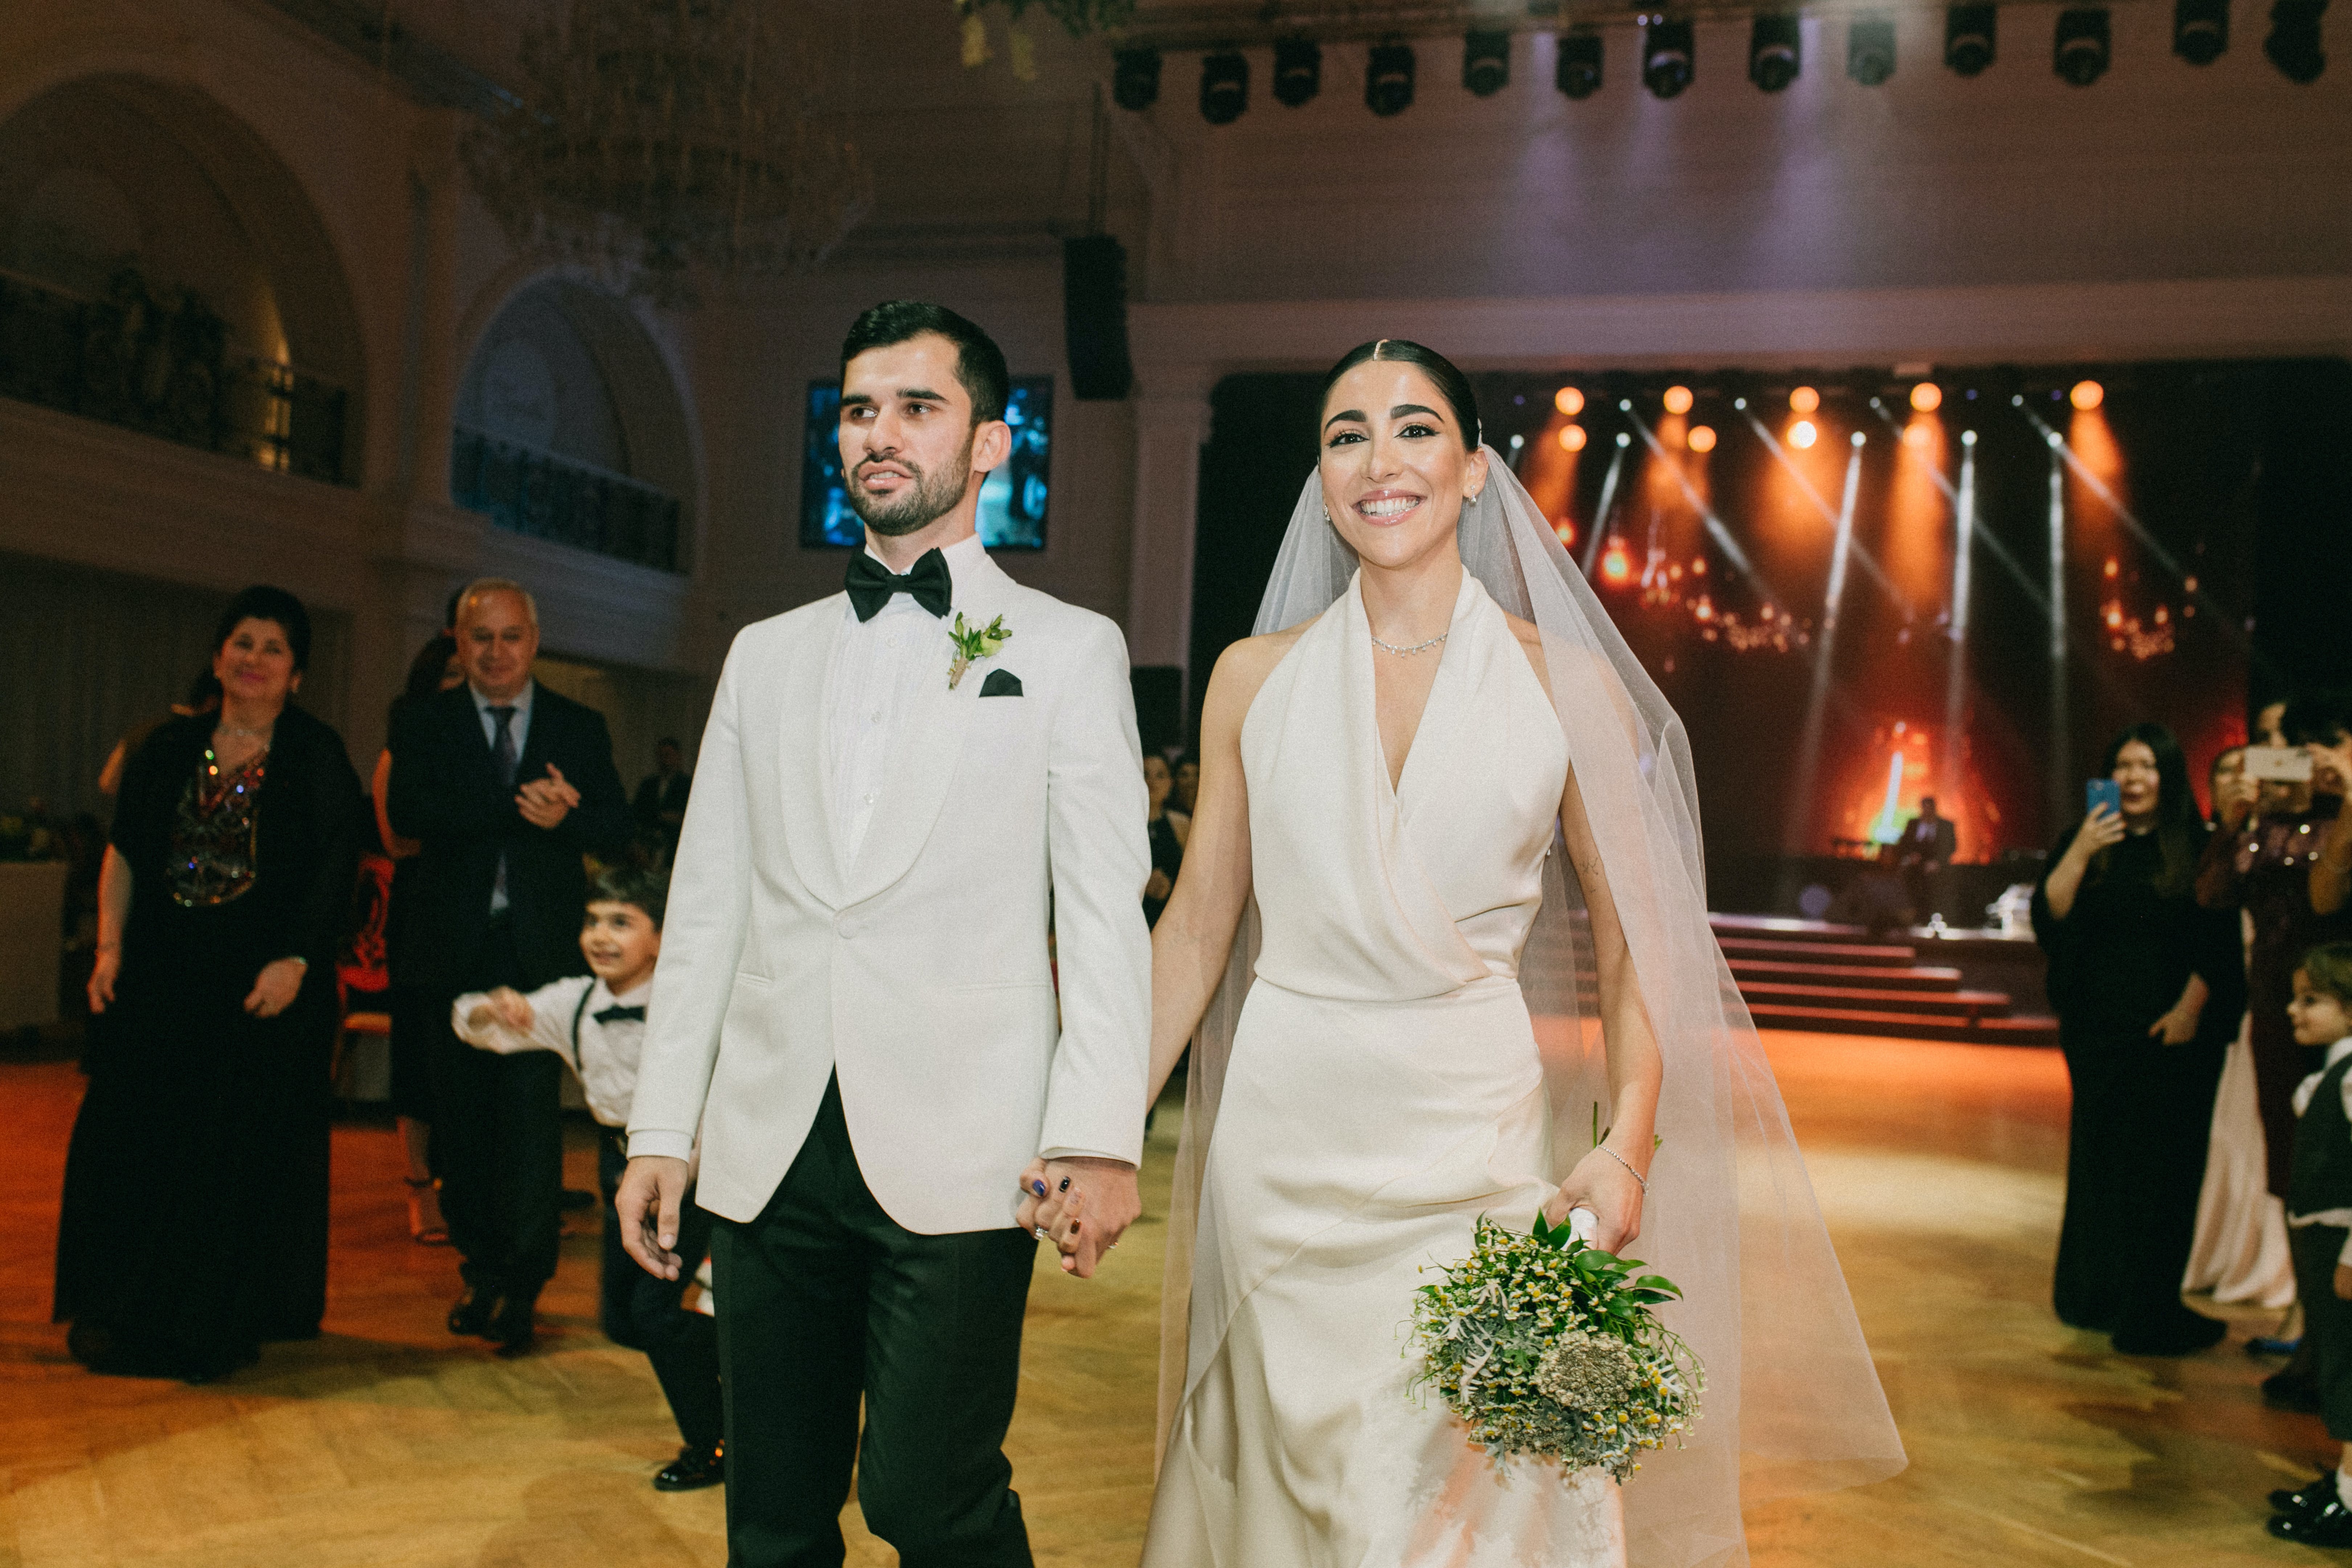 El novio y la novia caminando de la mano en el lugar de la boda | Foto: Pexels